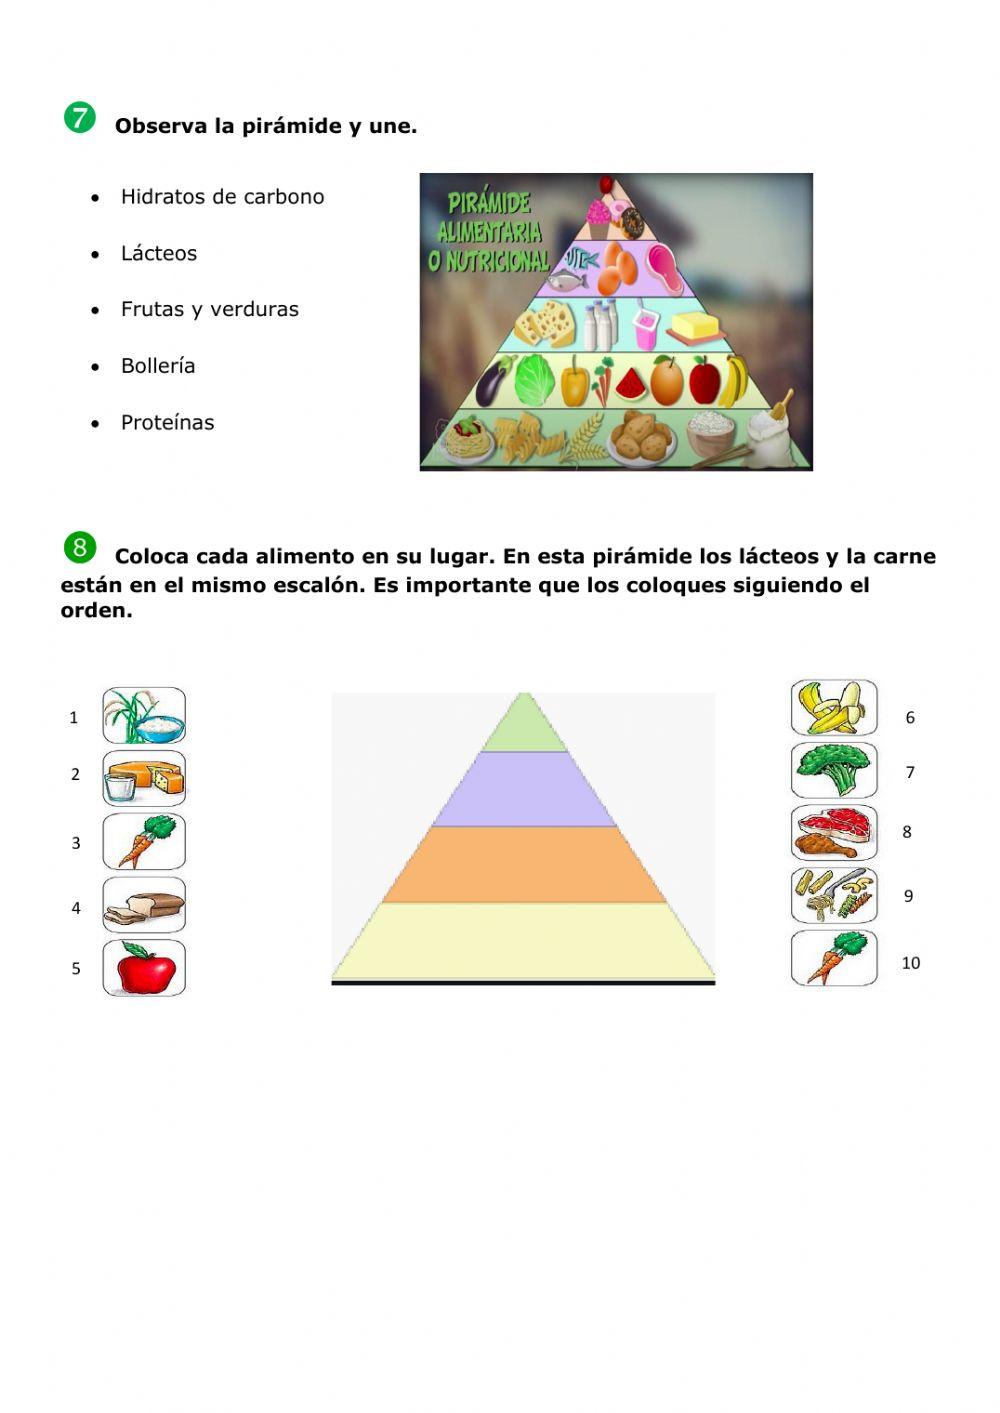 La pirámide alimentaria